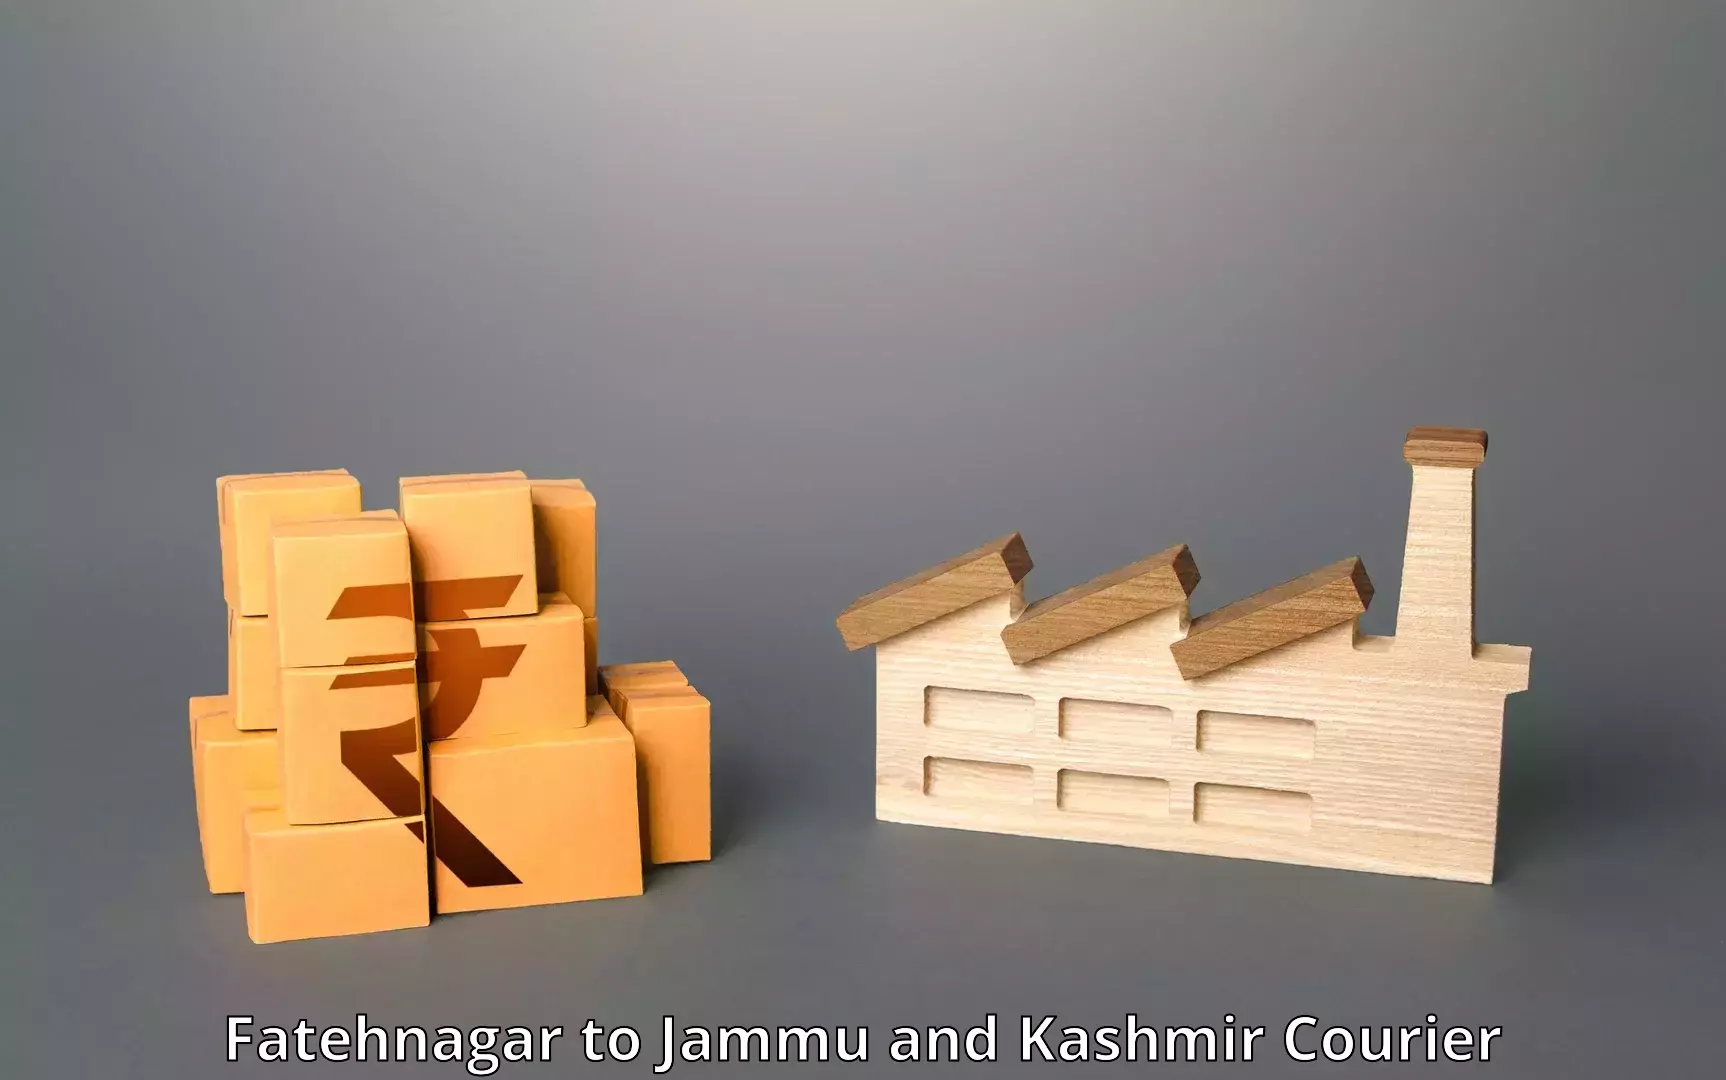 Next-generation courier services Fatehnagar to IIT Jammu